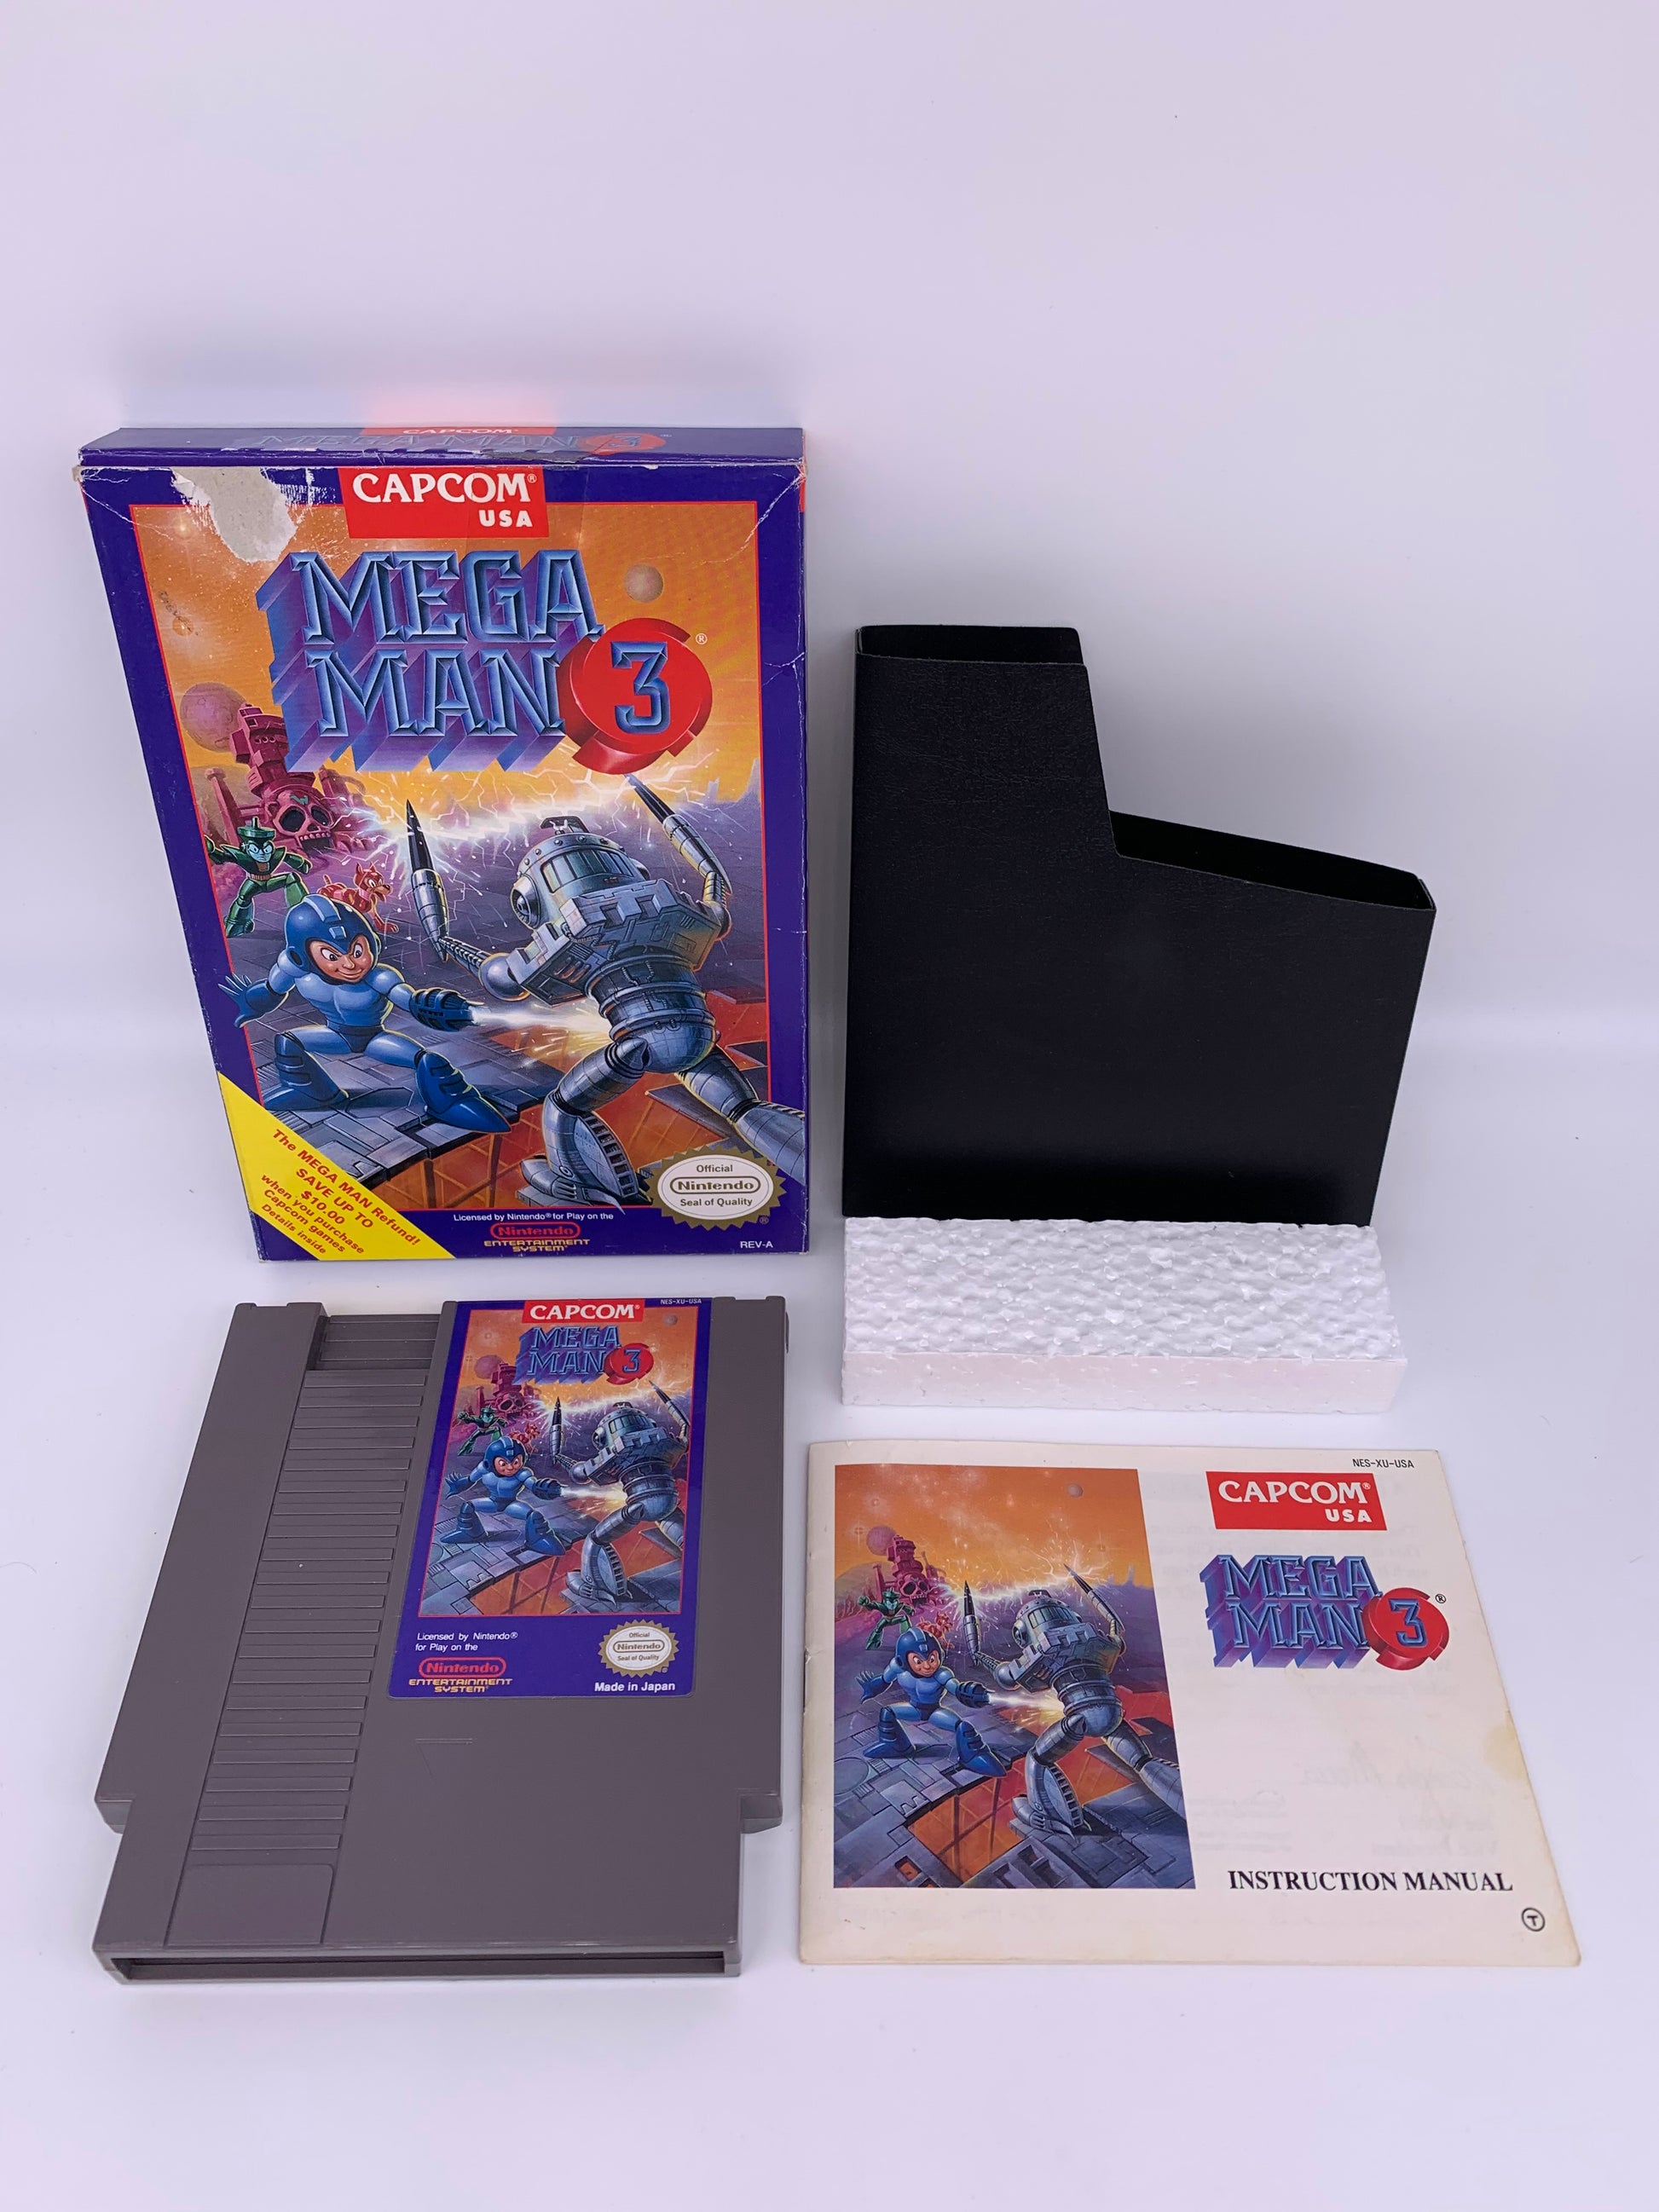 PiXEL-RETRO.COM : ORIGINAL NINTENDO NES COMPLET CIB BOX MANUAL GAME NTSC MEGAMAN MEGA MAN 3